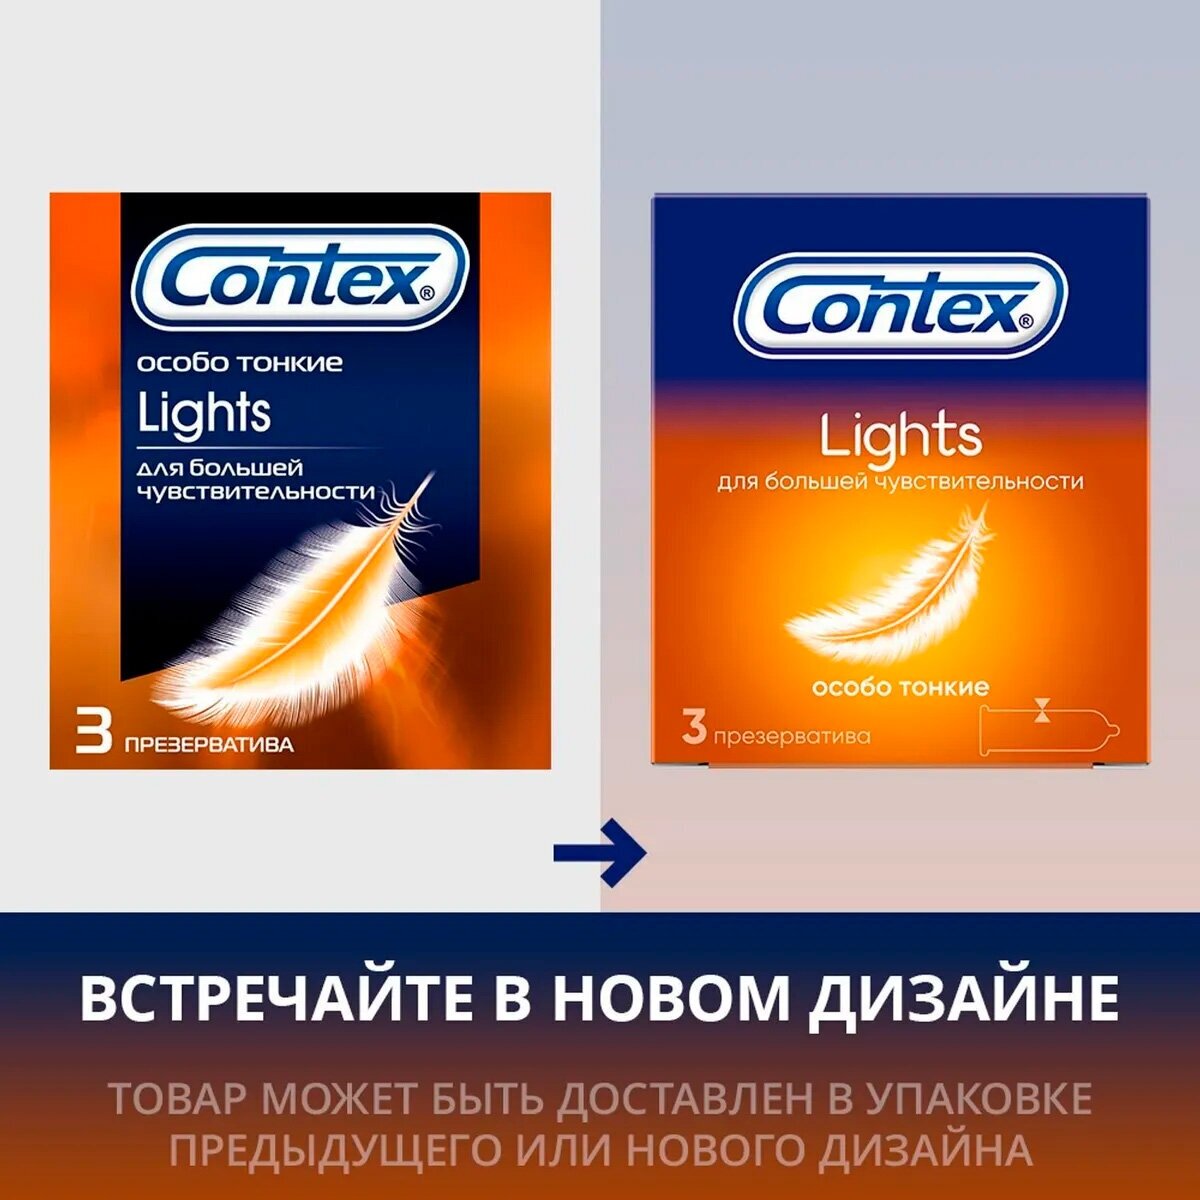 Презервативы Contex (Контекс) Light особо тонкие 12 шт. Рекитт Бенкизер Хелскэар (ЮК) Лтд - фото №8